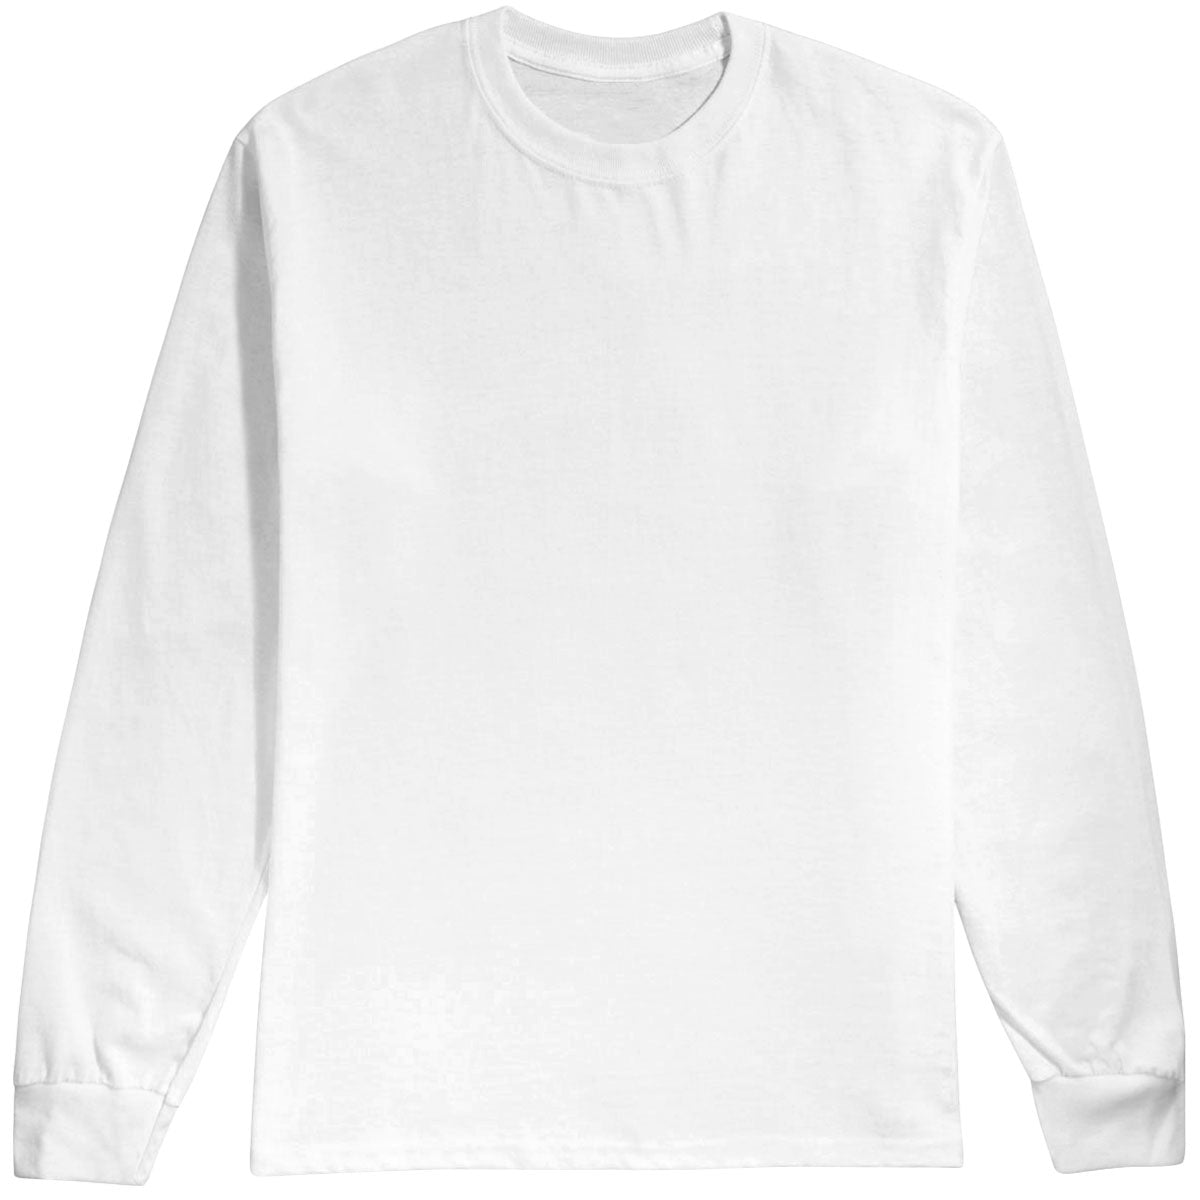 Habitat Crest Long Sleeve T-Shirt - White - MD image 1